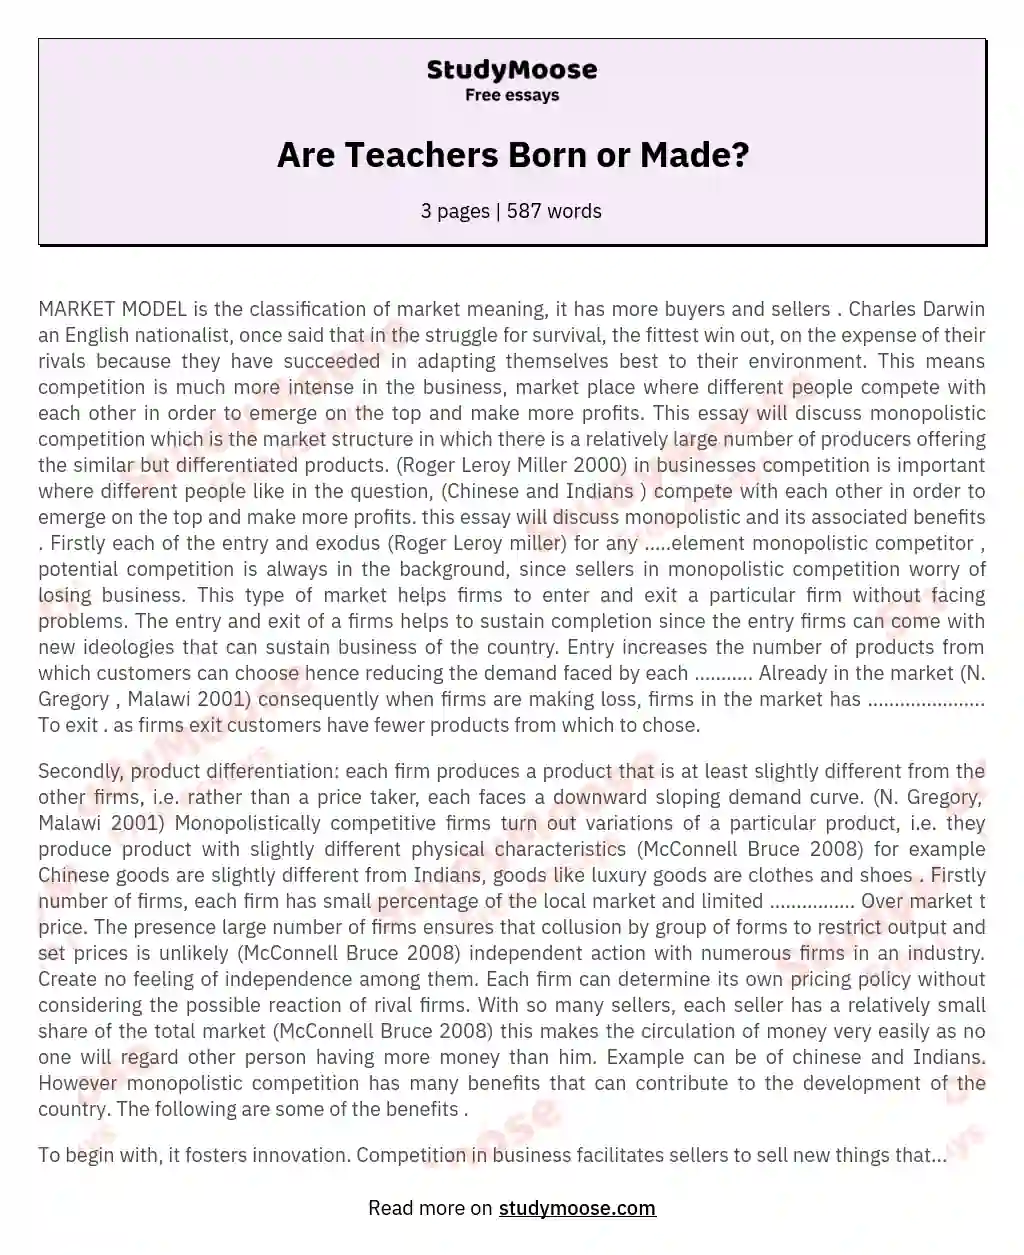 Are Teachers Born or Made? essay